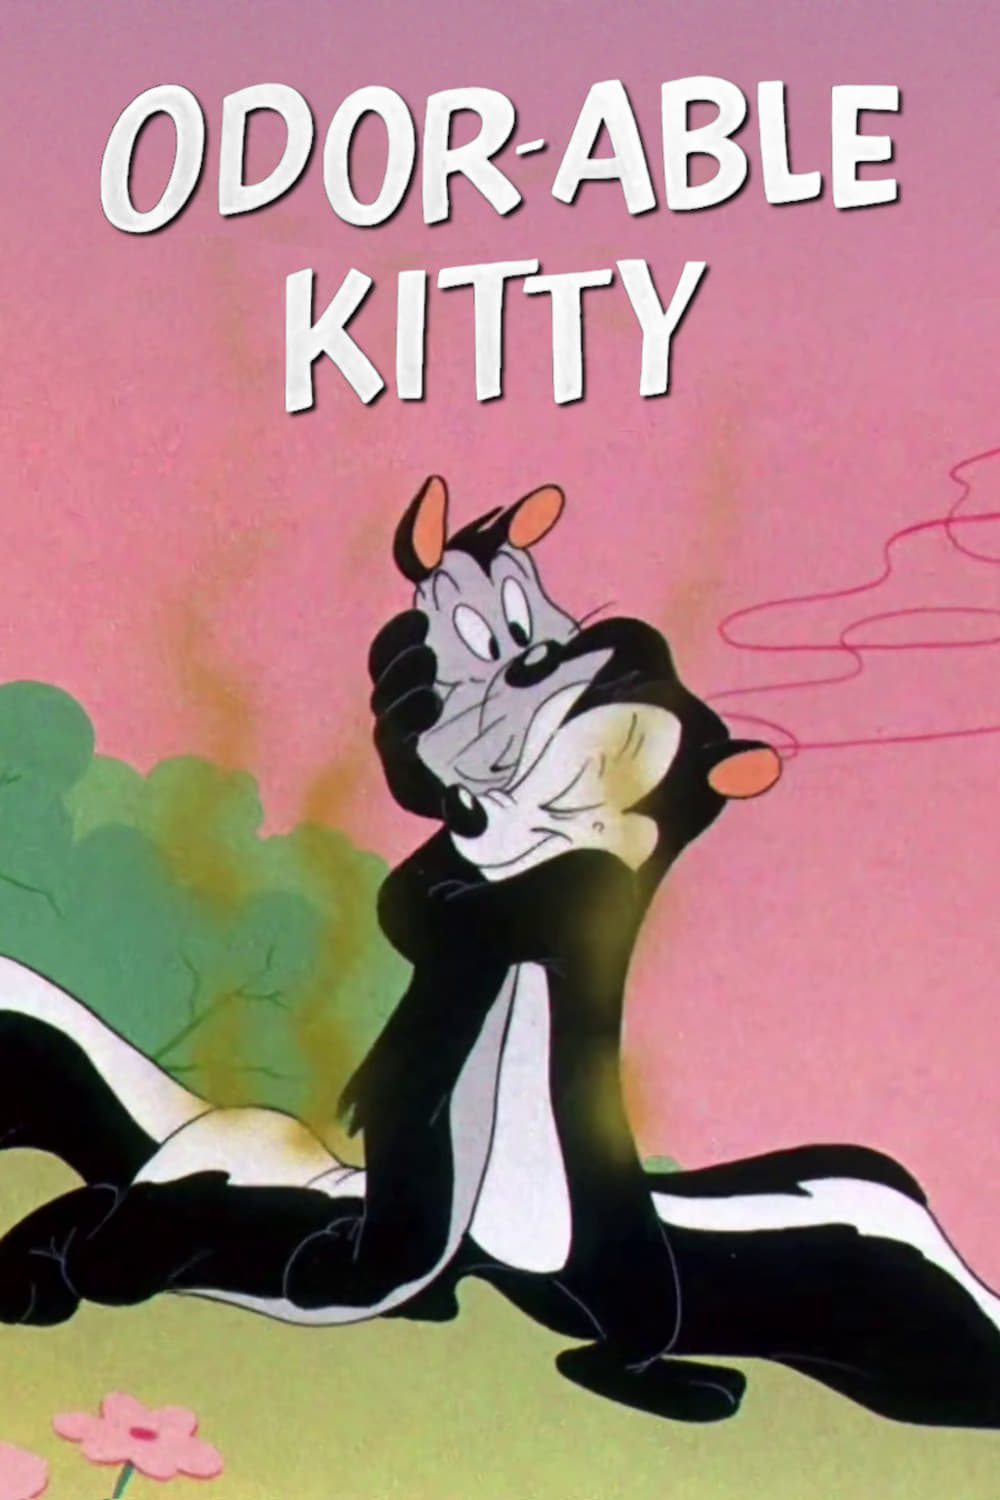 Odor-Able Kitty (1945)